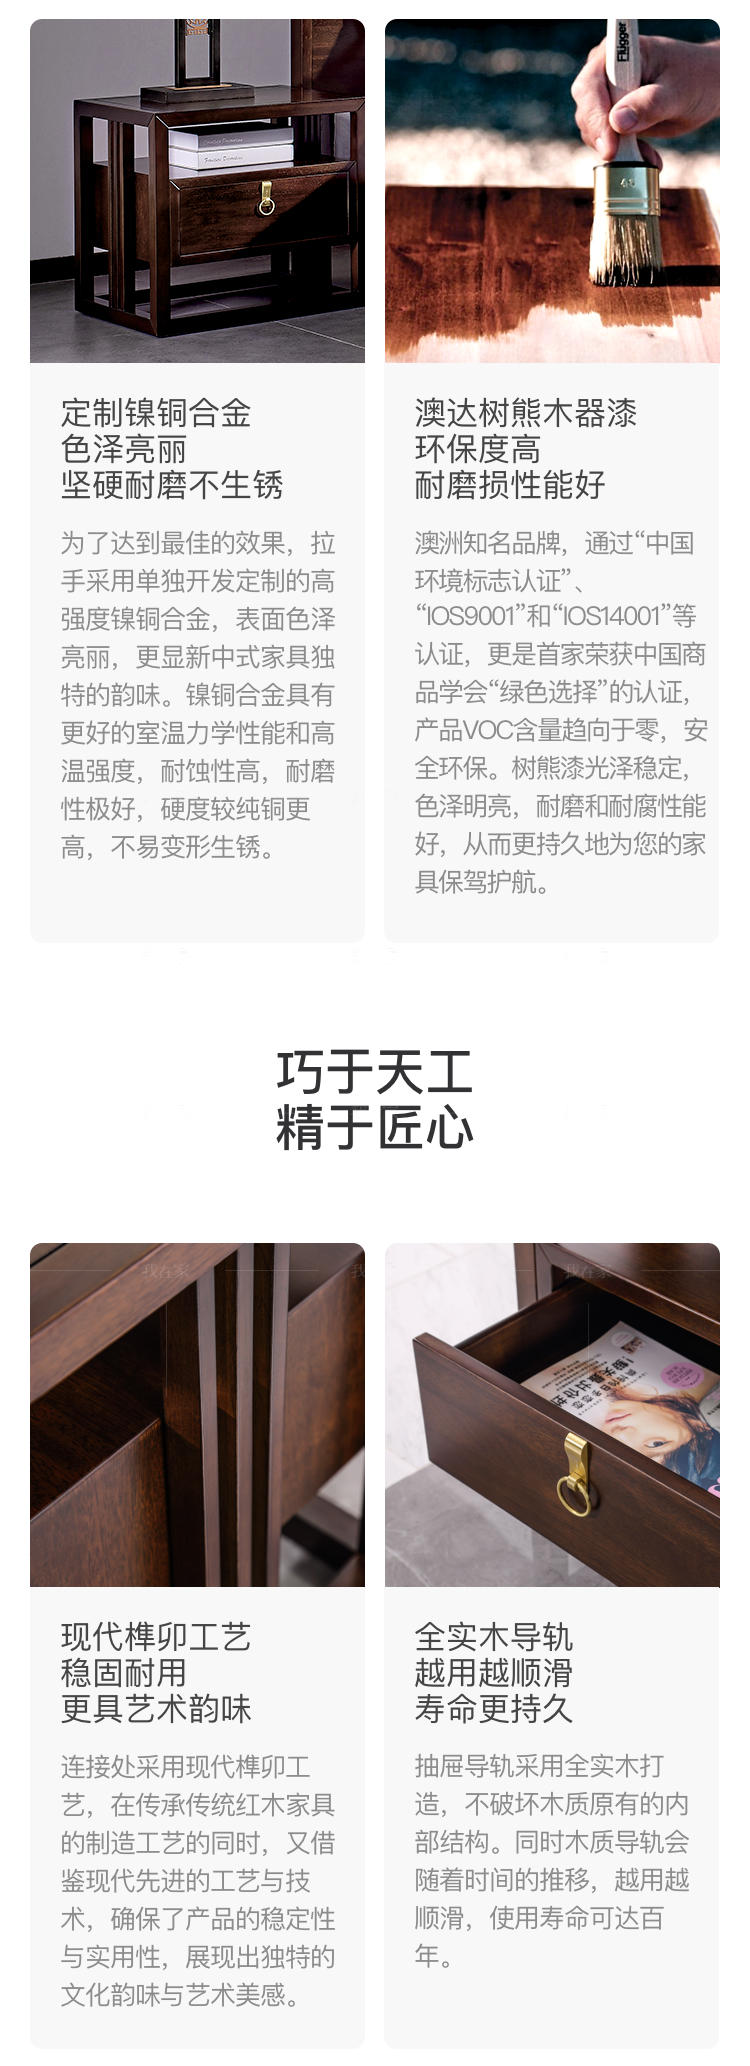 新中式风格同舟床头柜的家具详细介绍